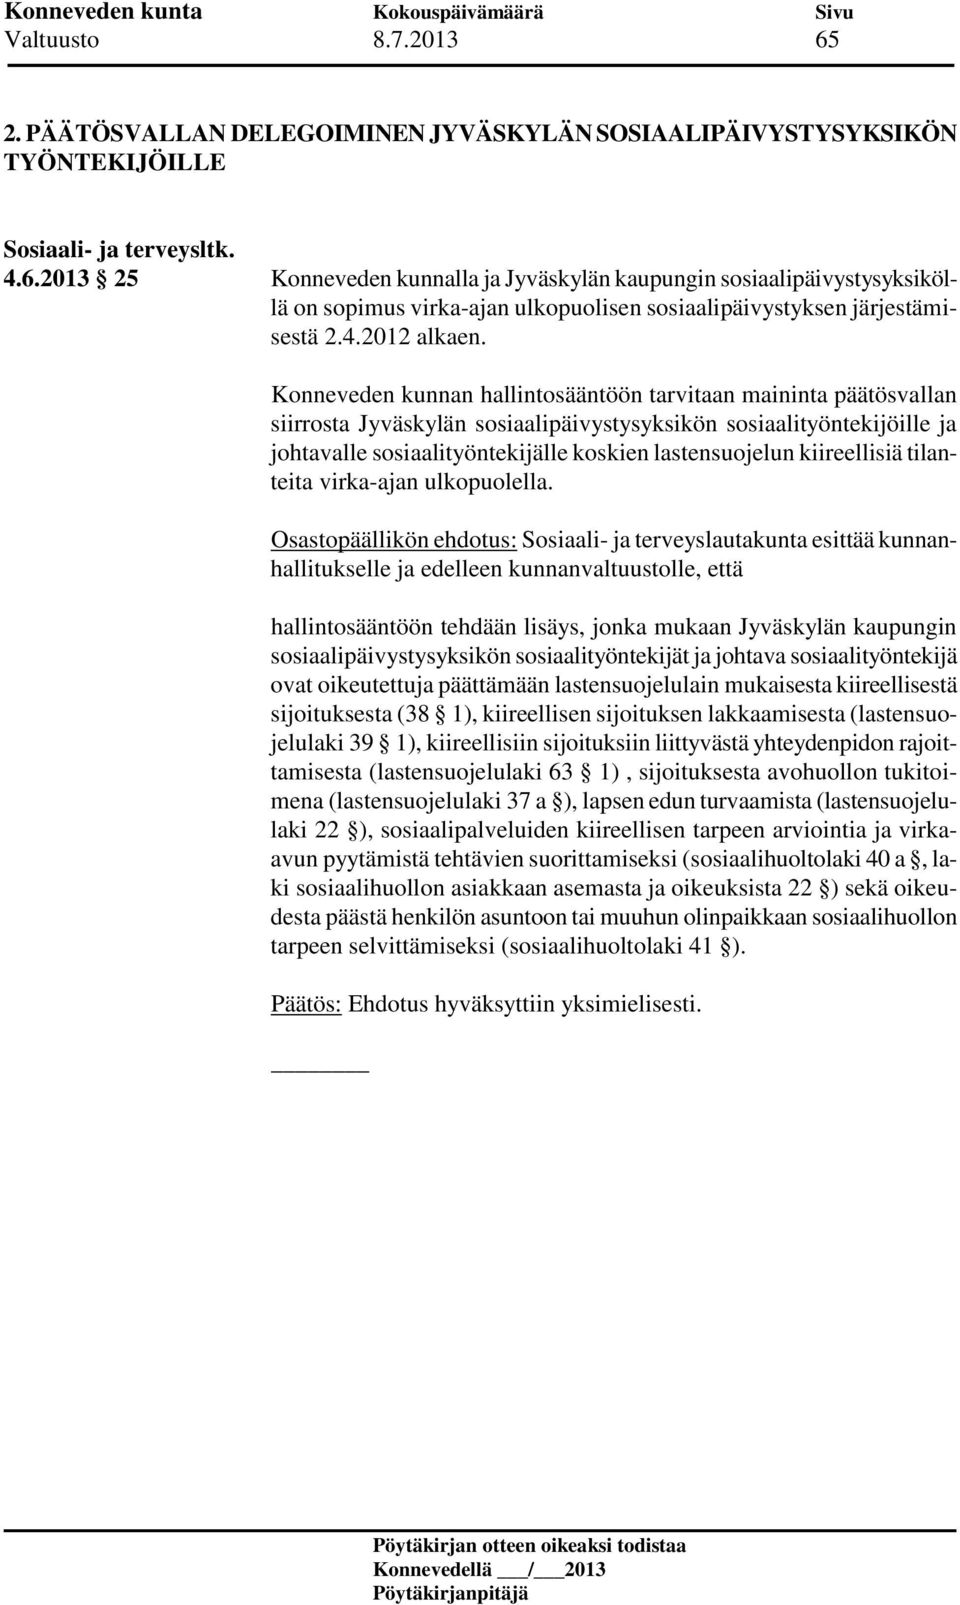 Konneveden kunnan hallintosääntöön tarvitaan maininta päätösvallan siirrosta Jyväskylän sosiaalipäivystysyksikön sosiaalityöntekijöille ja johtavalle sosiaalityöntekijälle koskien lastensuojelun